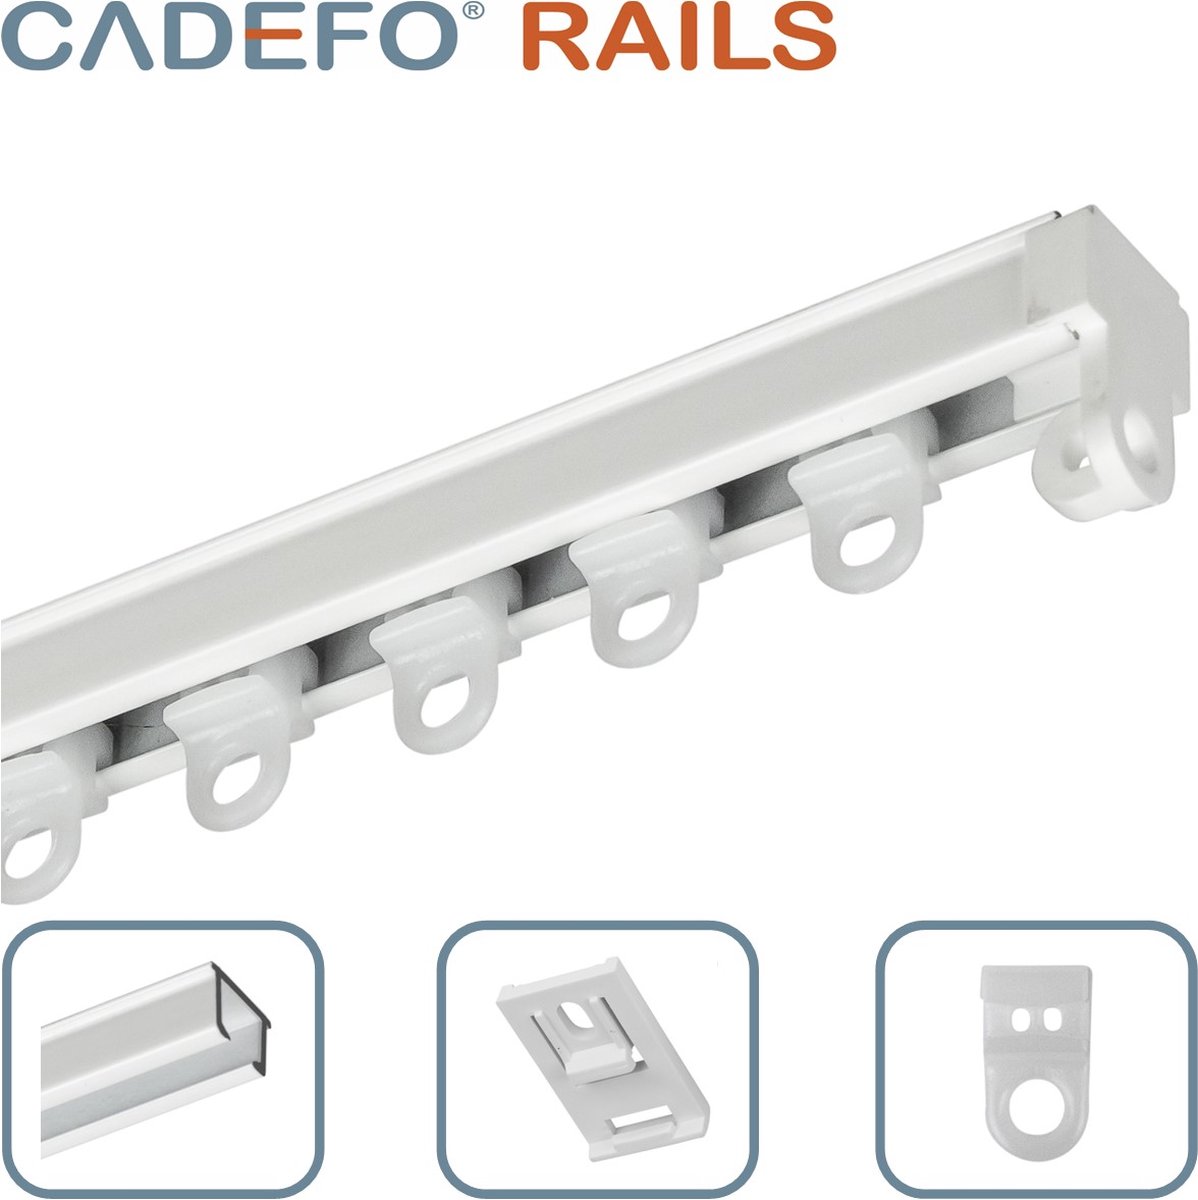 CADEFO RAILS (501 - 550 cm) Gordijnrails - Compleet op maat! - UIT 1 STUK - Leverbaar tot 6 meter - Plafondbevestiging - Lengte 536 cm